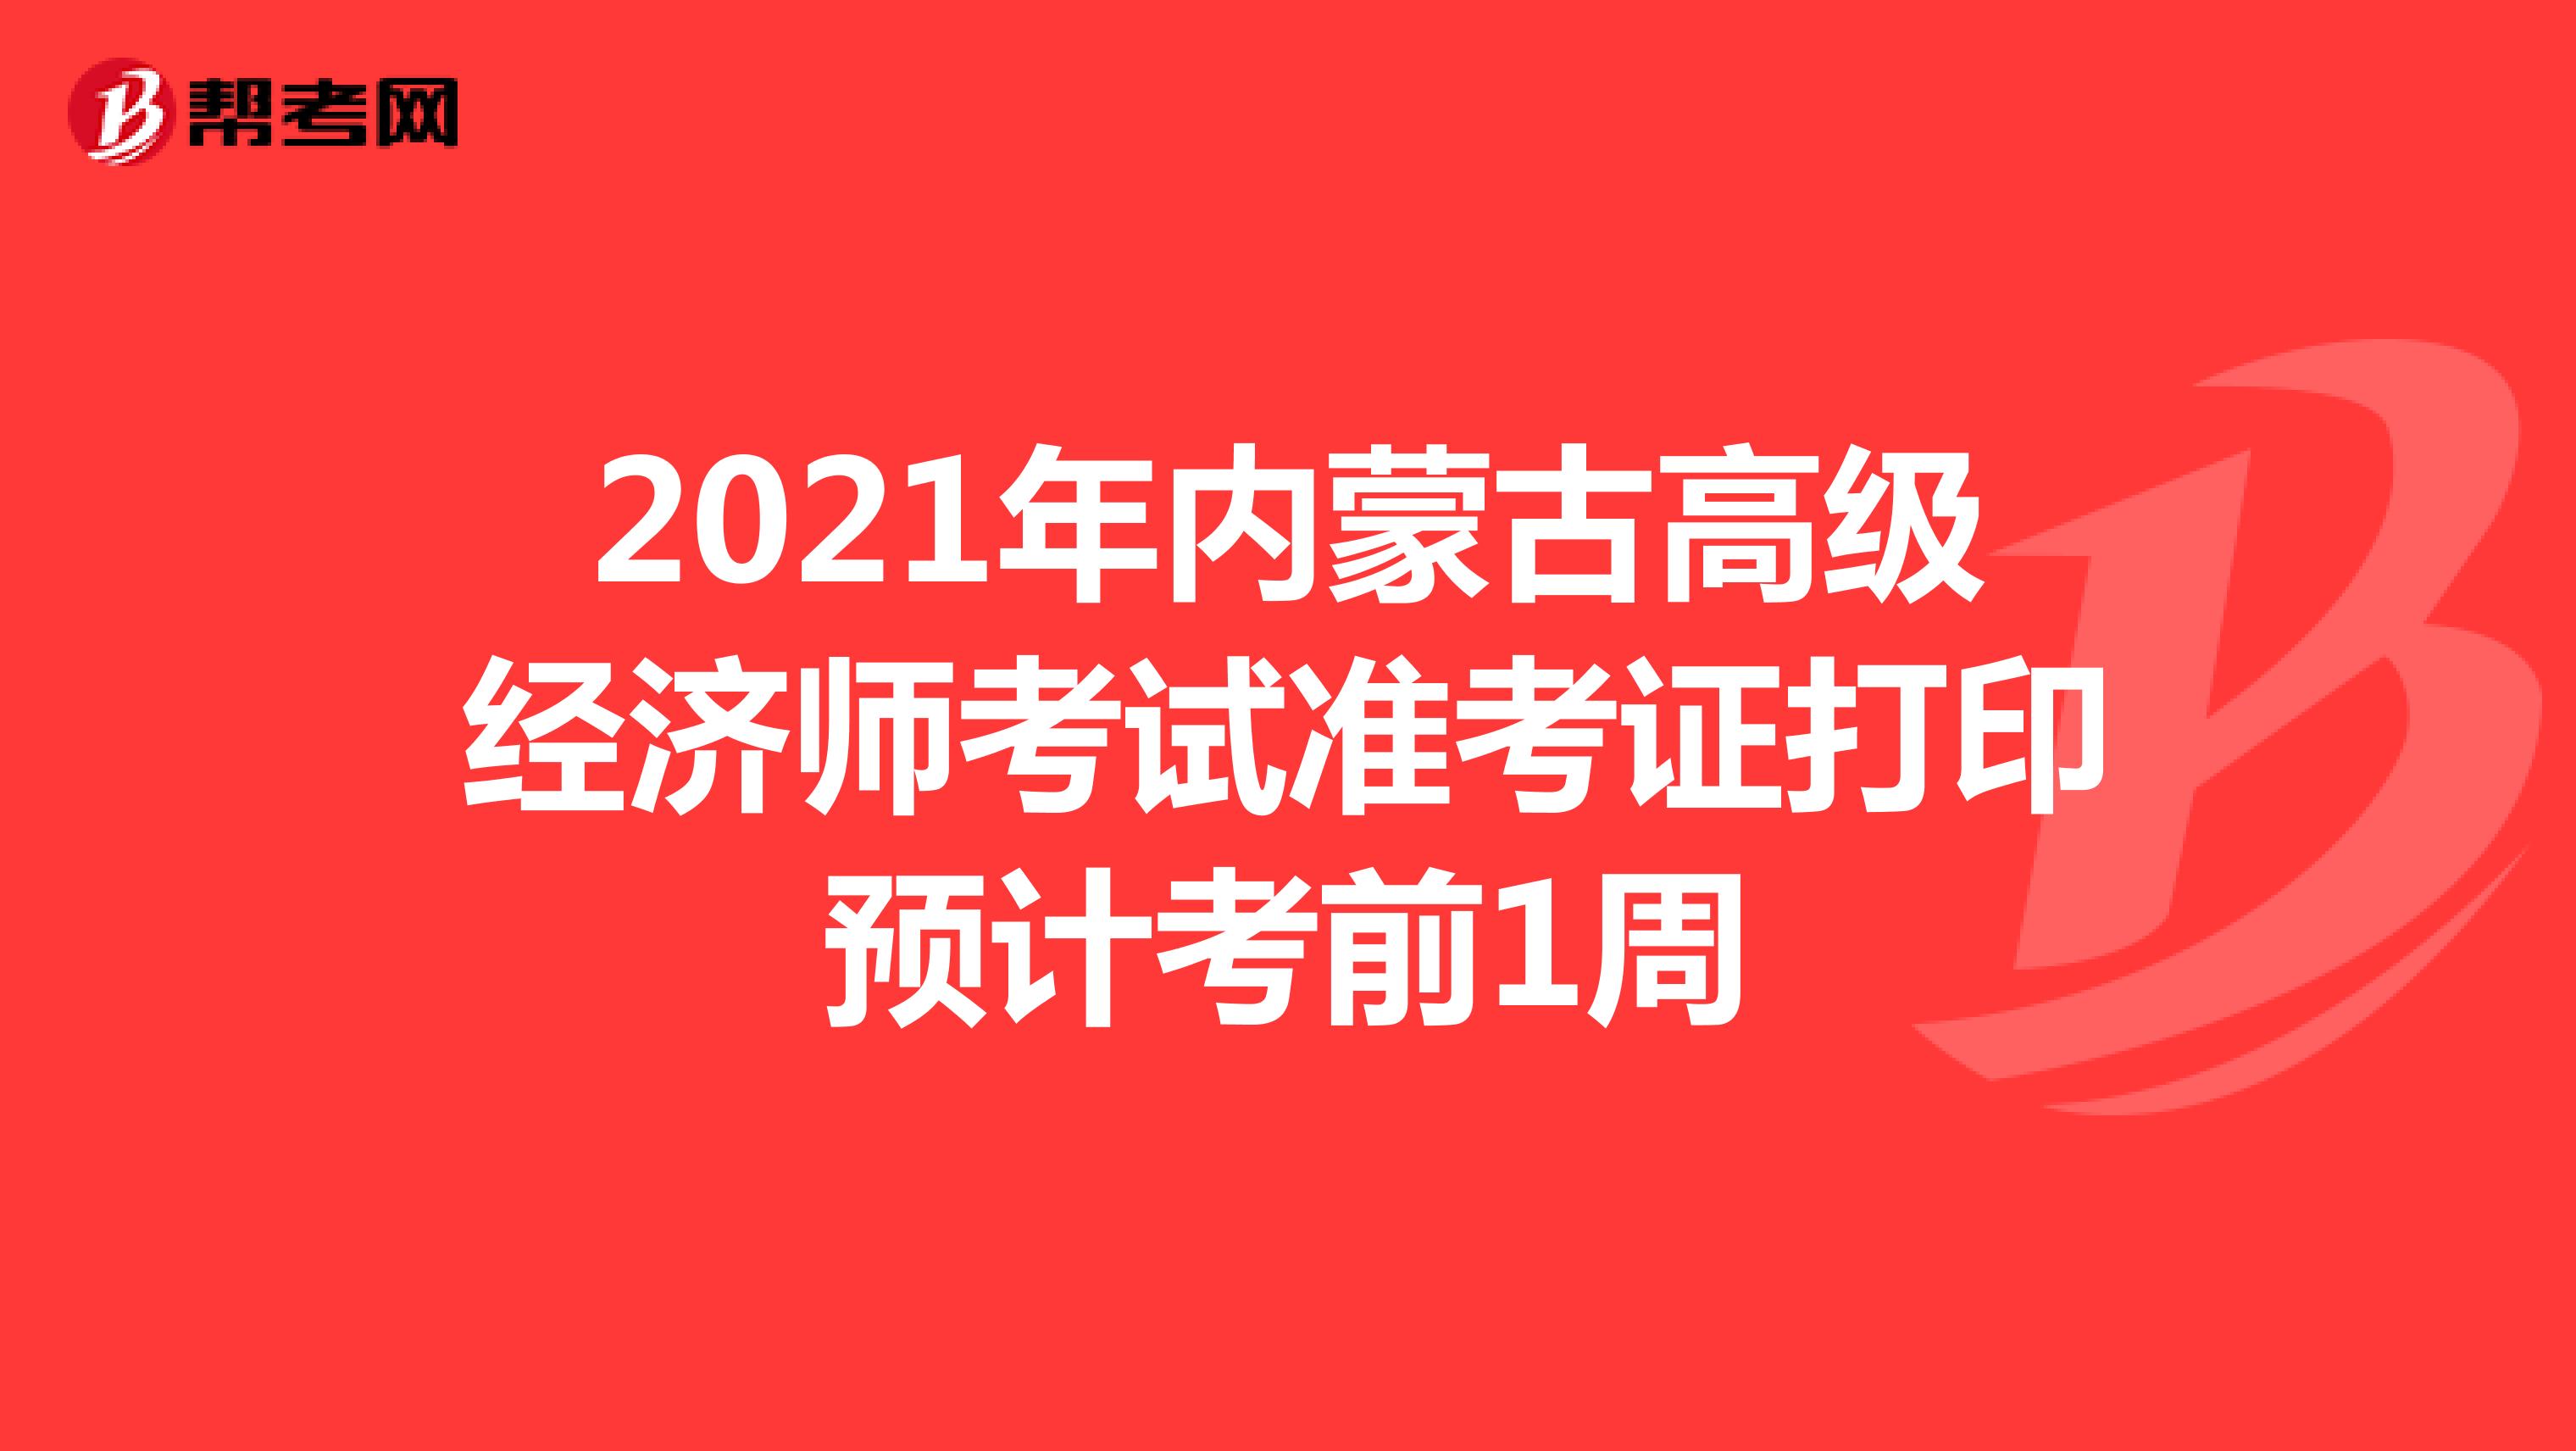 2021年内蒙古高级经济师考试准考证打印预计考前1周